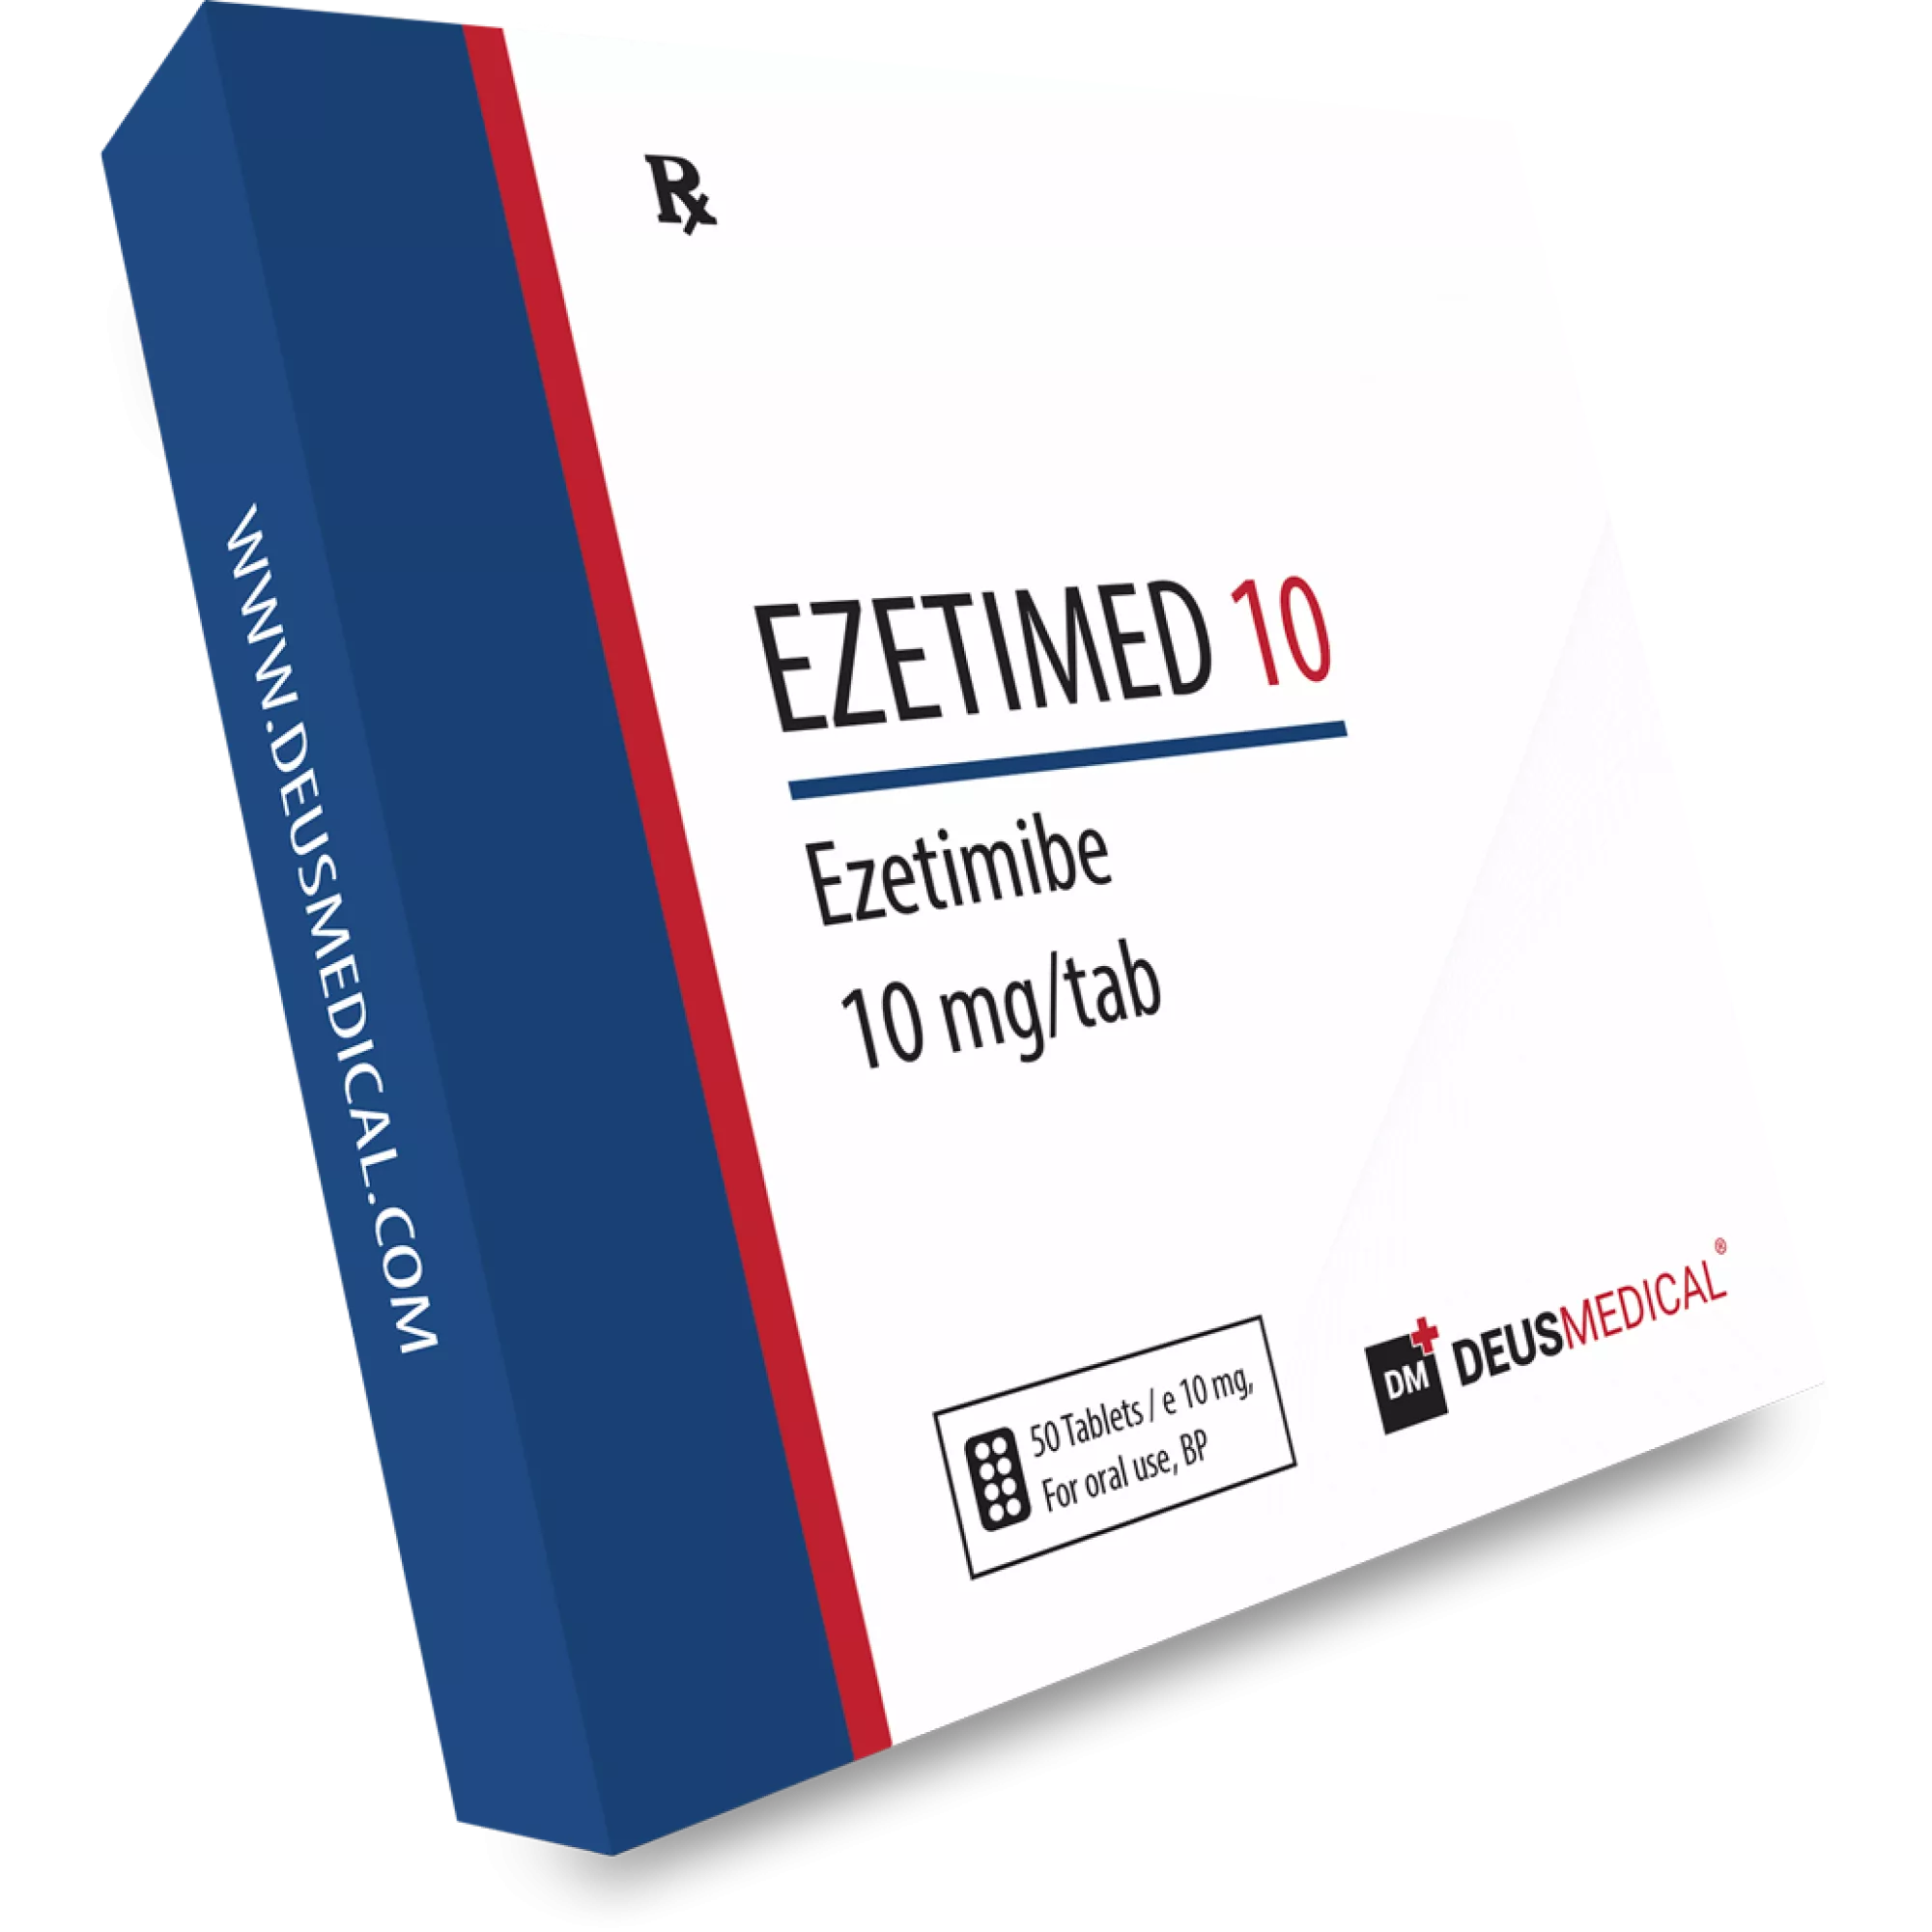 EZETIMED 10 (Ezetimibe), Deus Medical, Buy Steroids Online - www.deuspower.shop